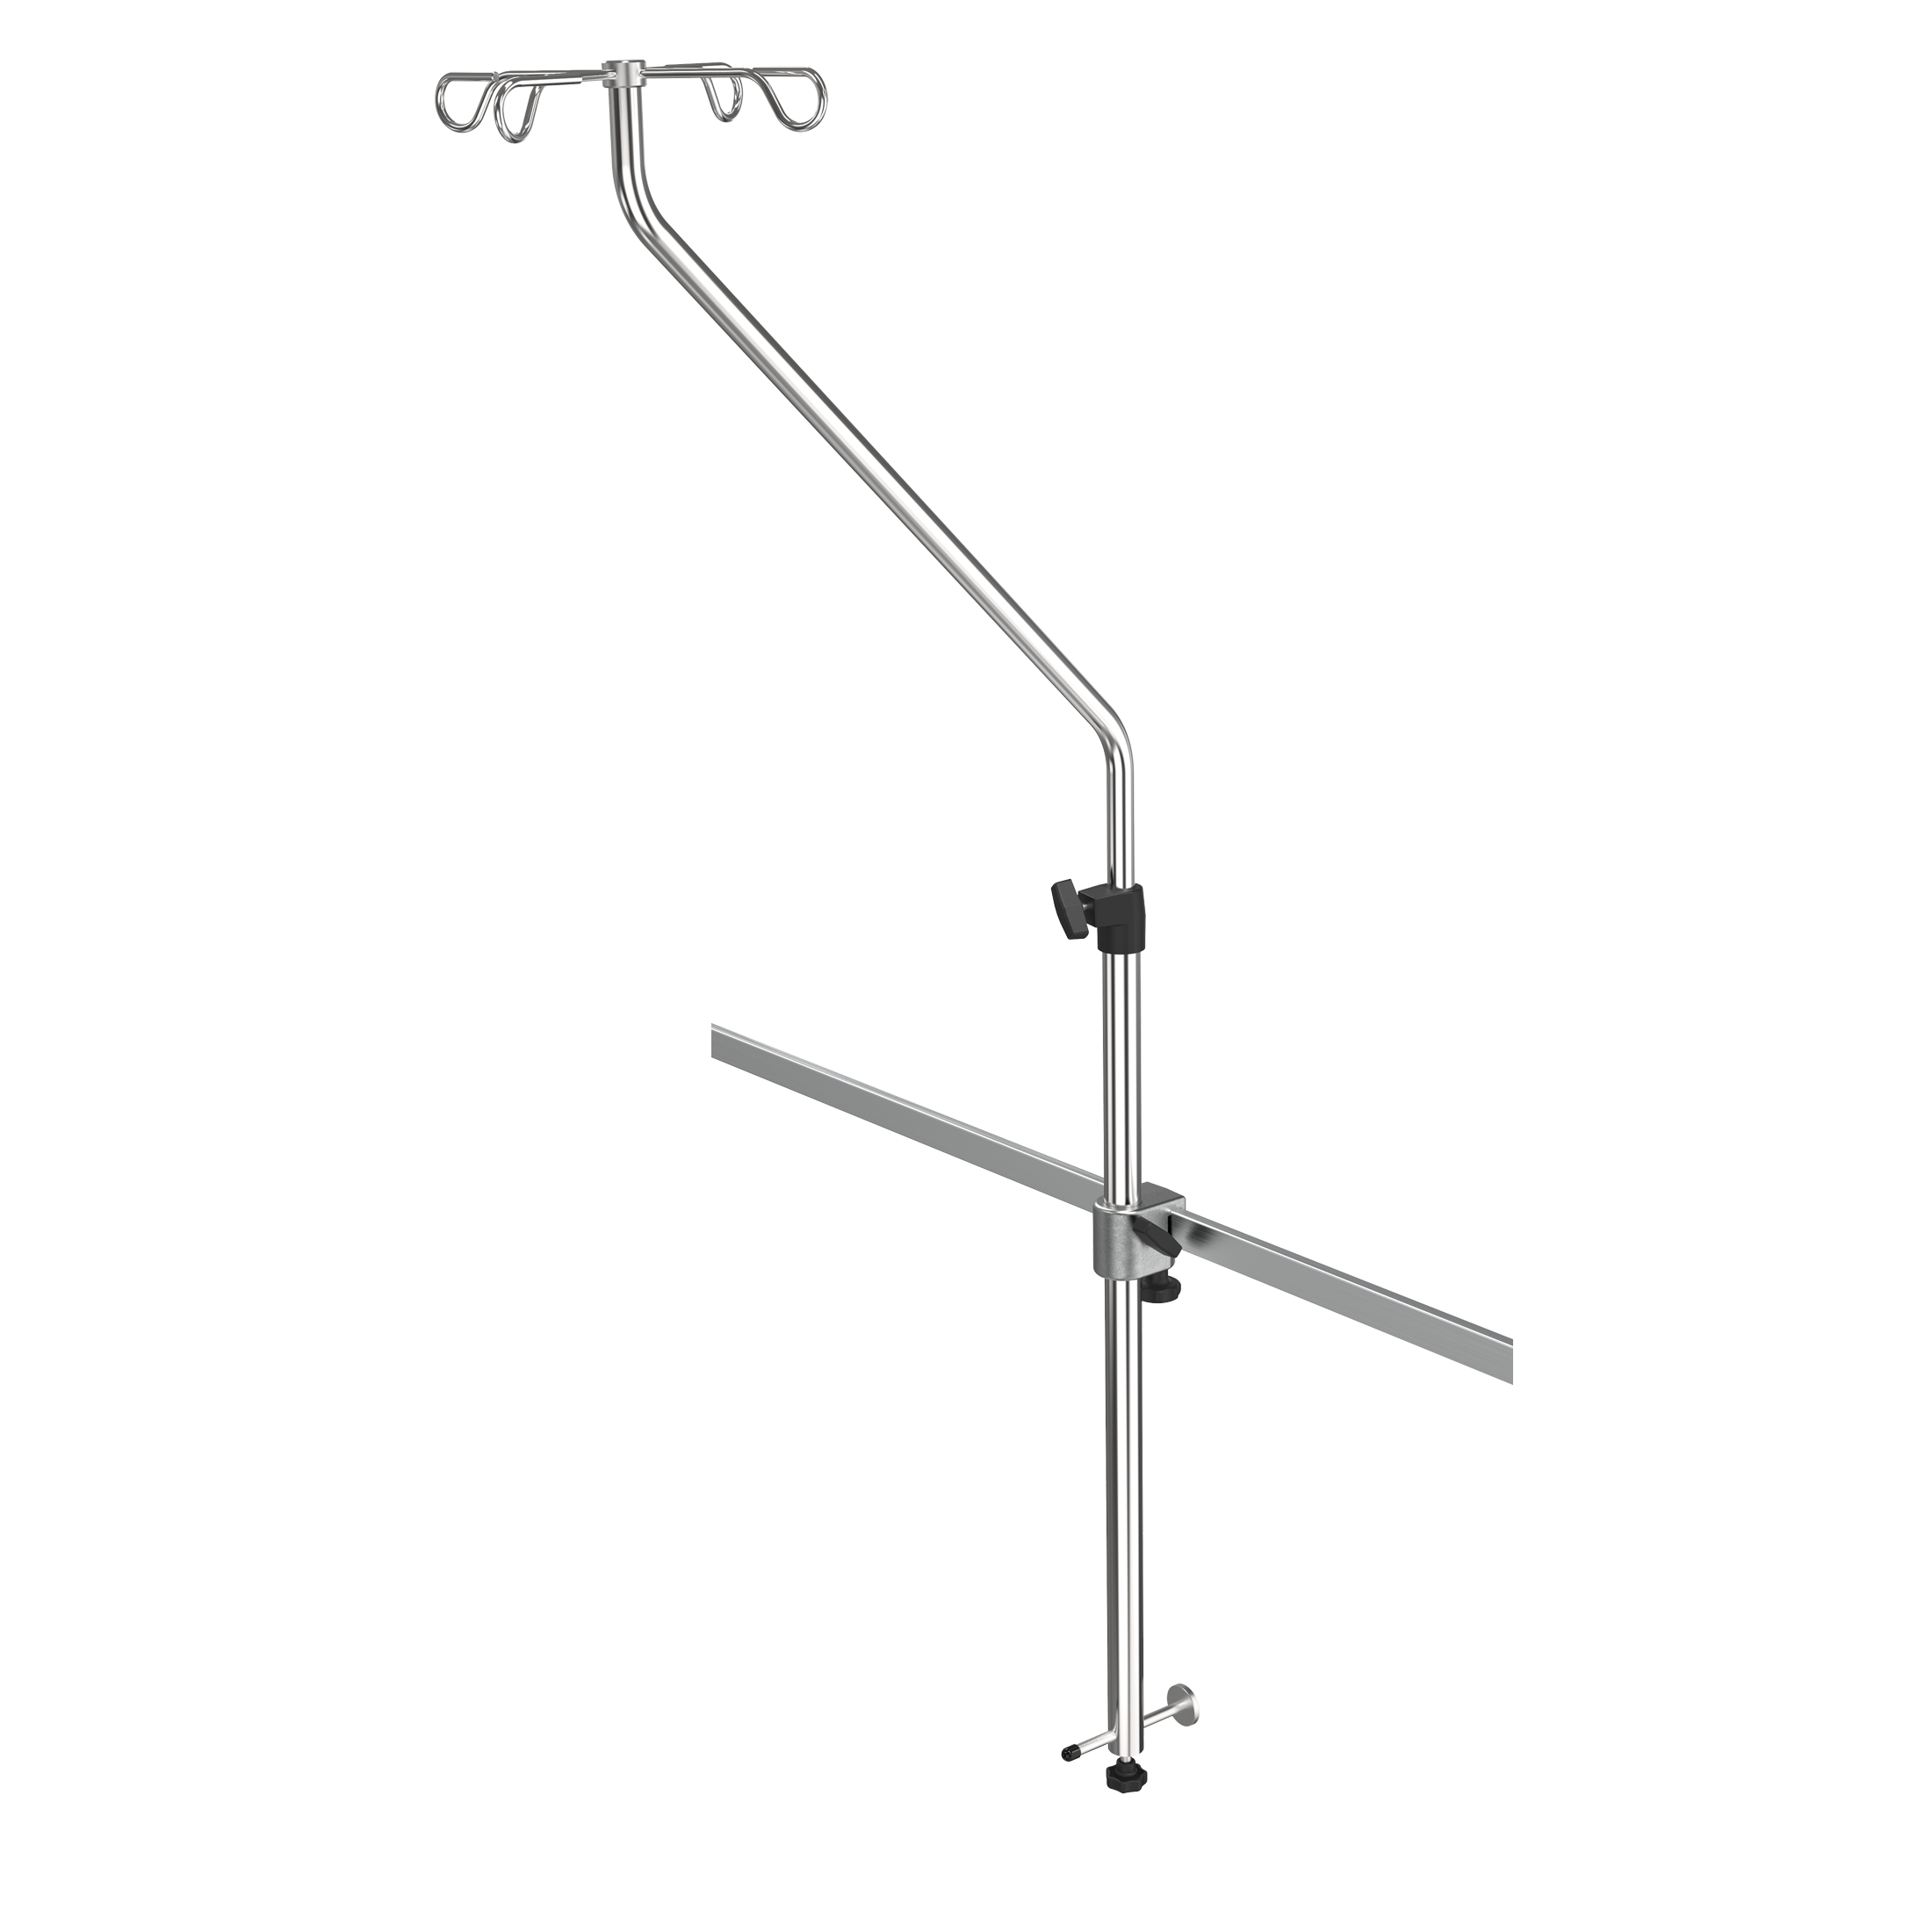 IV-Pole (angled) f. wall rail